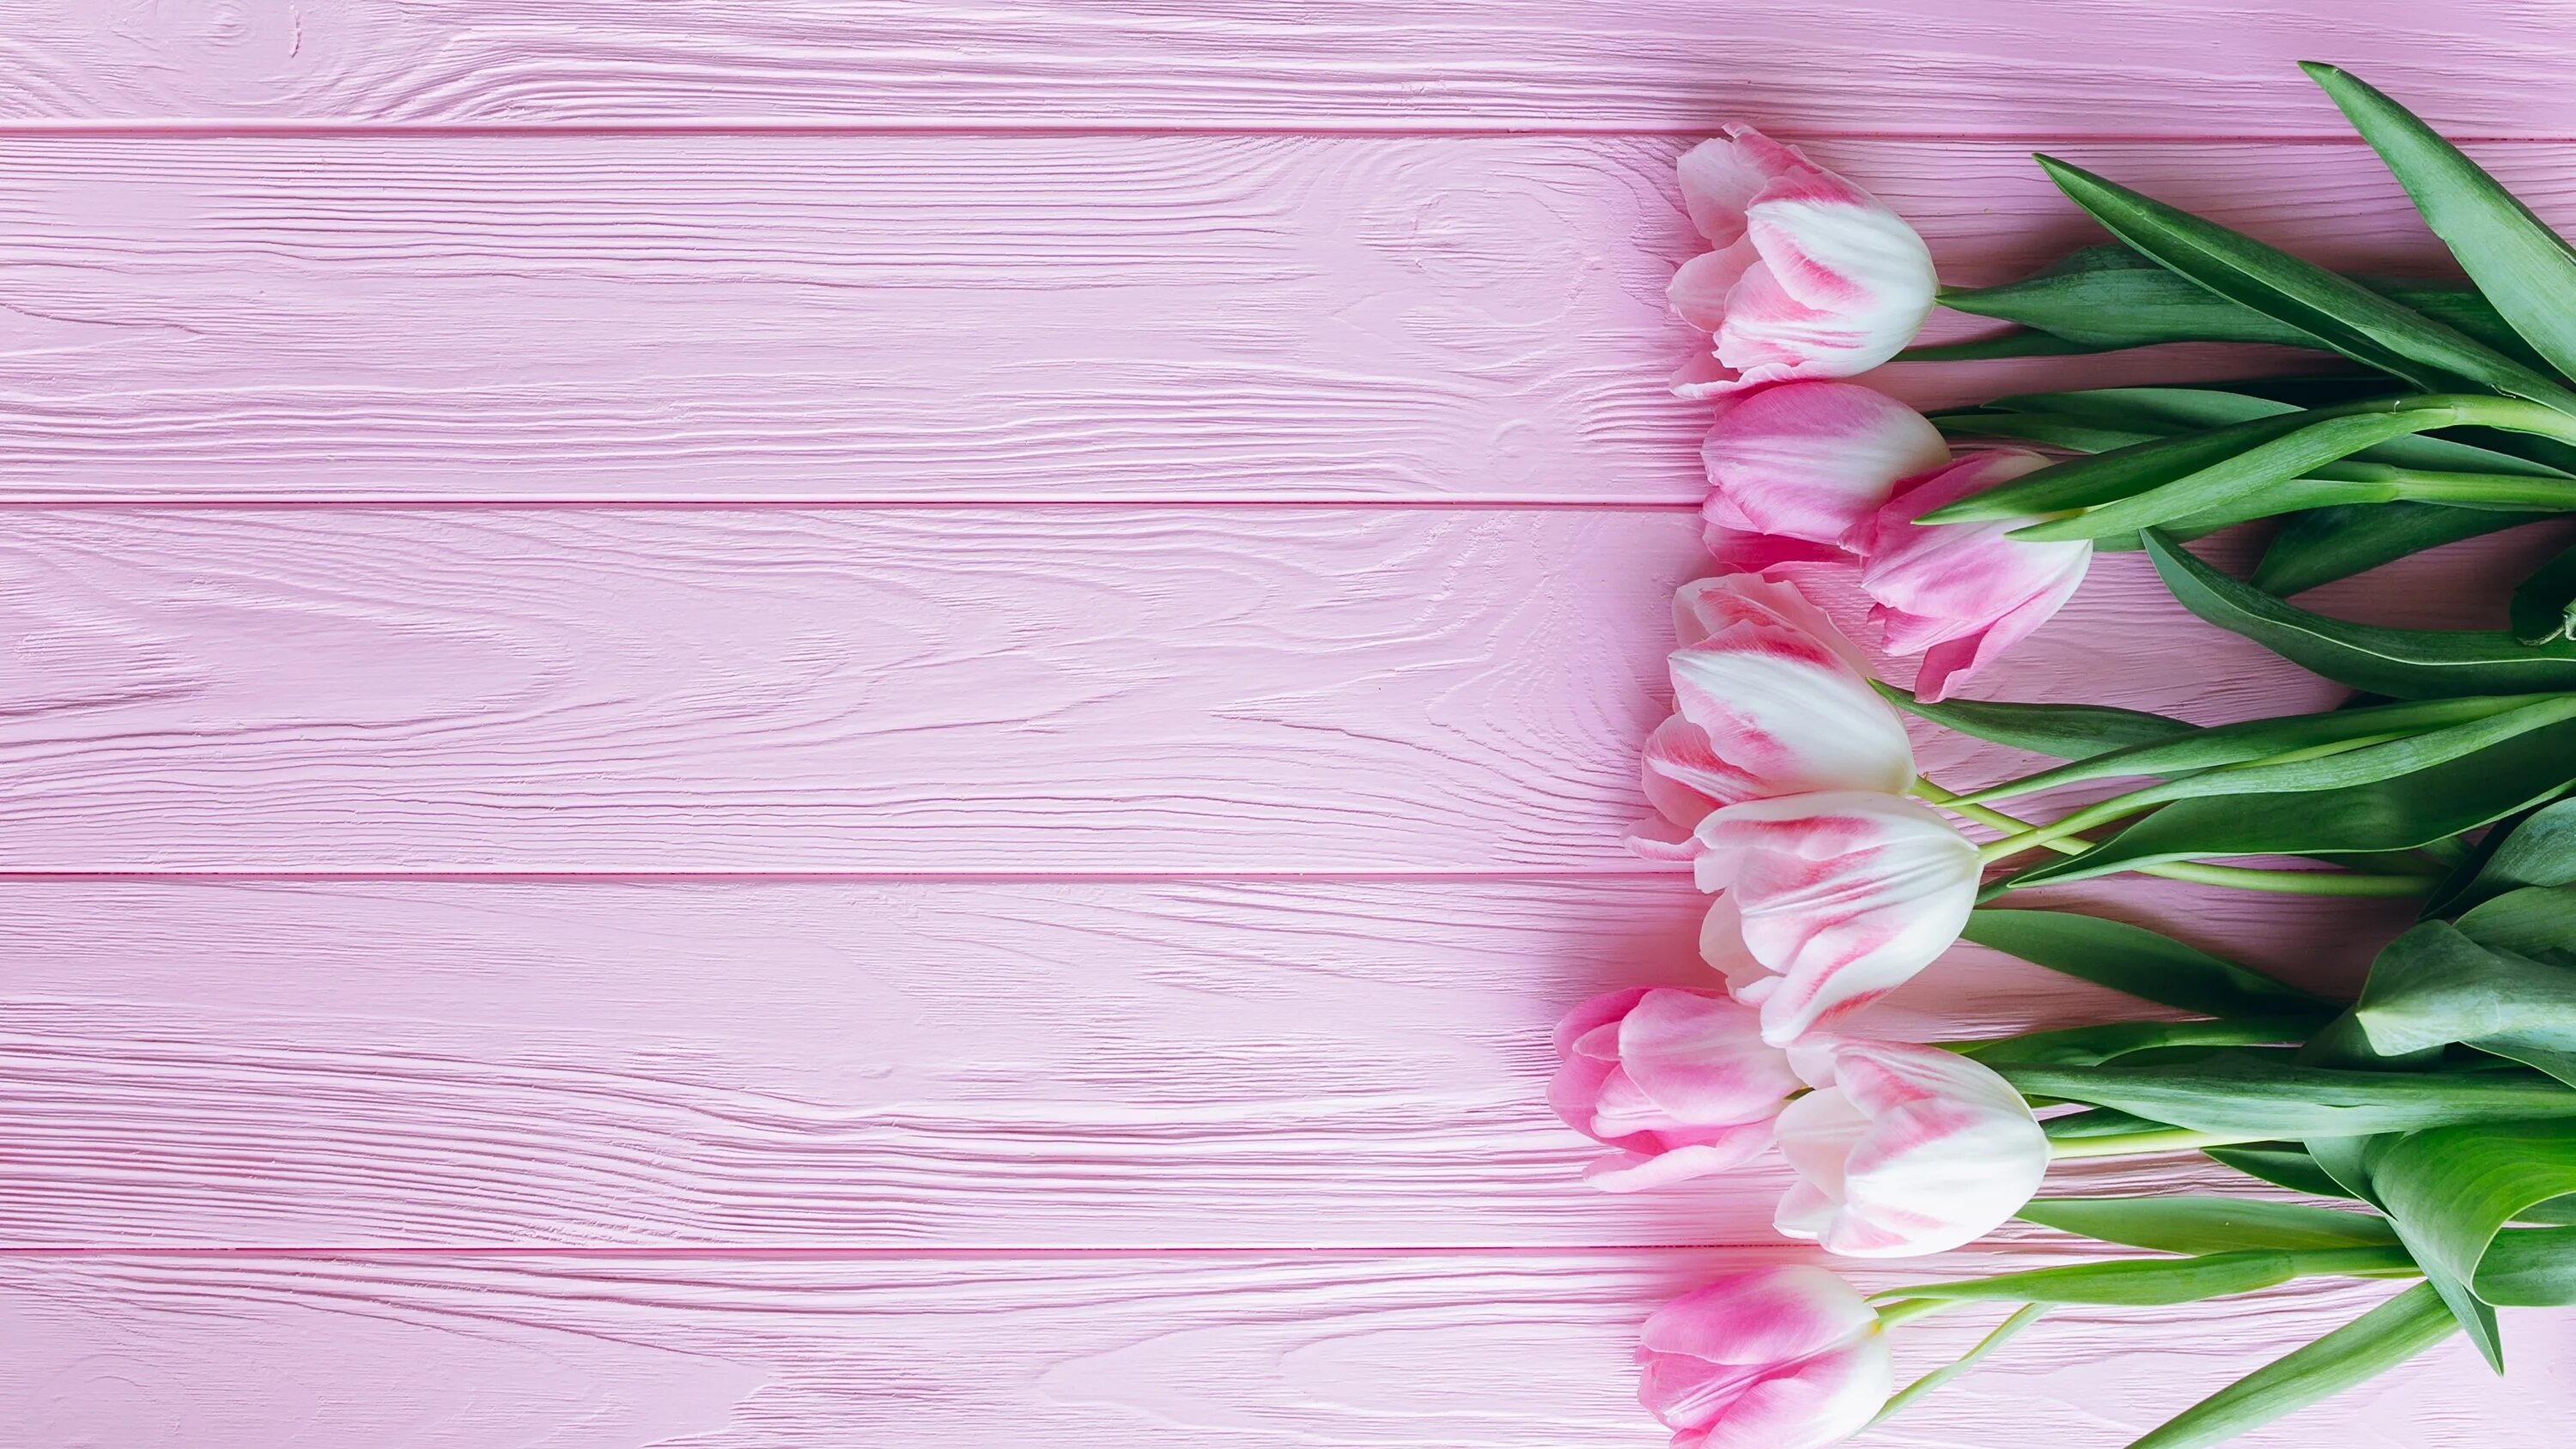 Картинка а4 цветы. Розовые тюльпаны. Фон цветы. Цветы на фоне досок. Цветы на деревянном фоне.